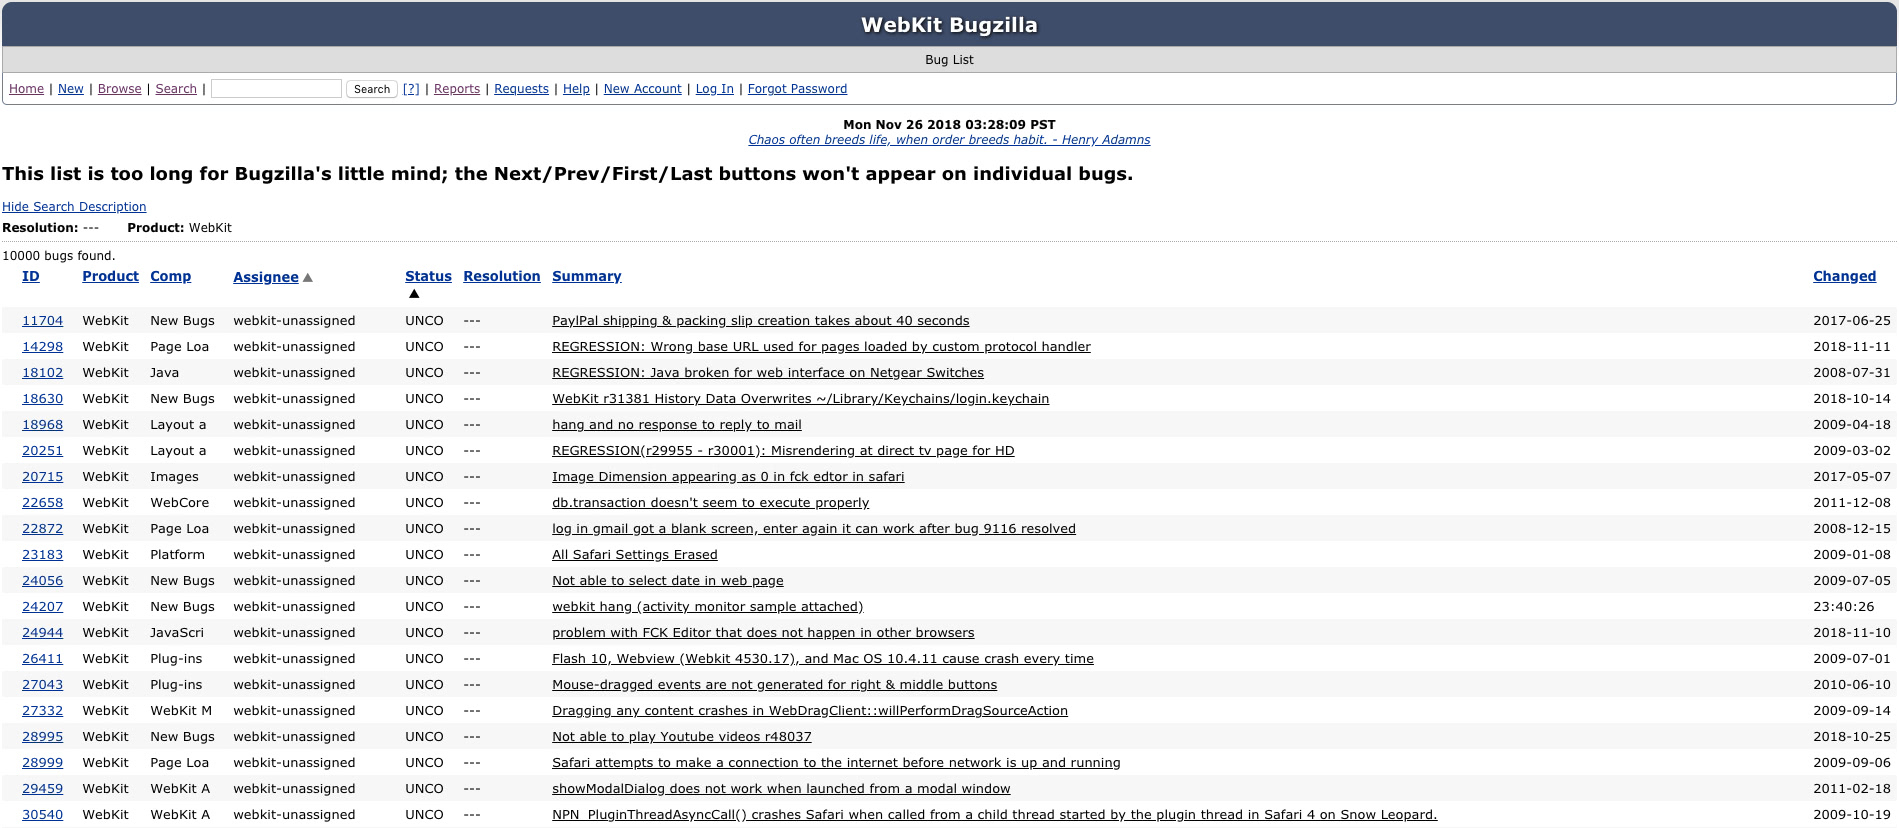 WebKit Bug List